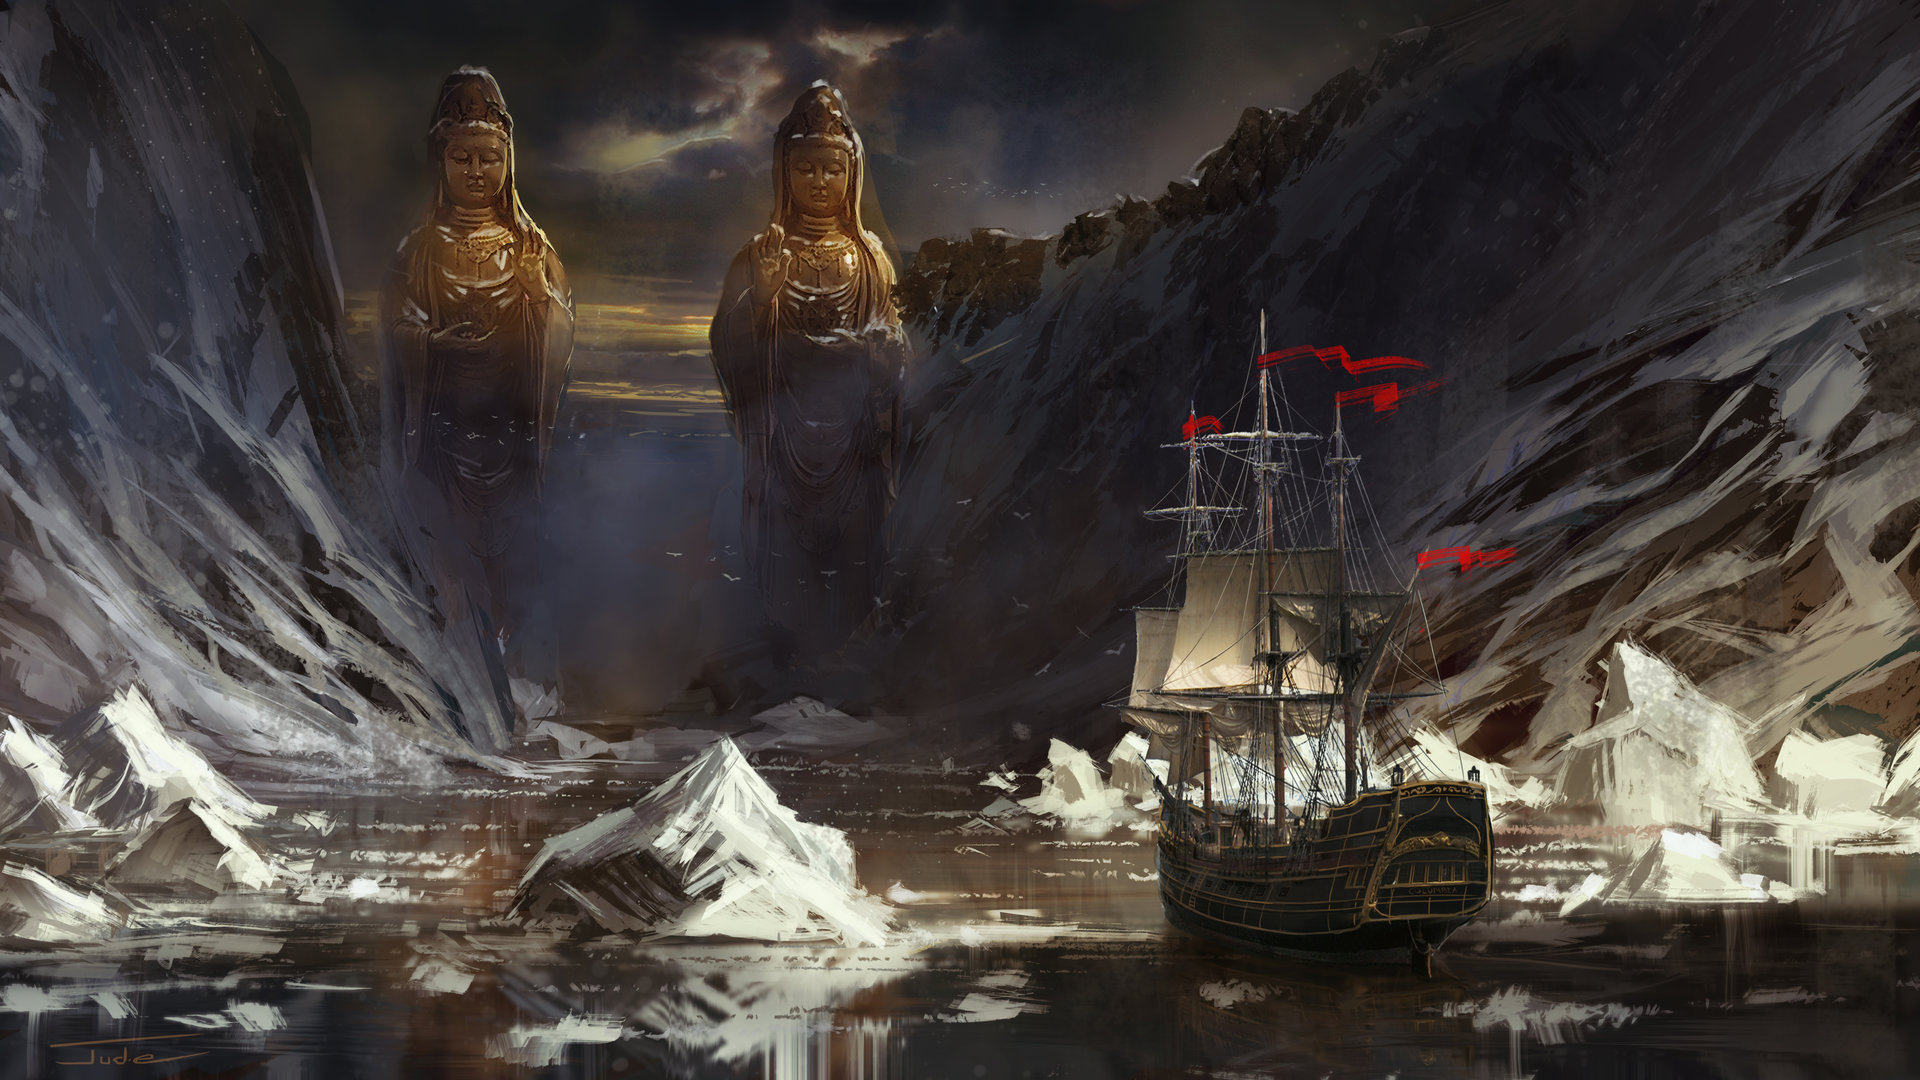 Descarga gratuita de fondo de pantalla para móvil de Fantasía, Estatua, Barco, Iceberg.